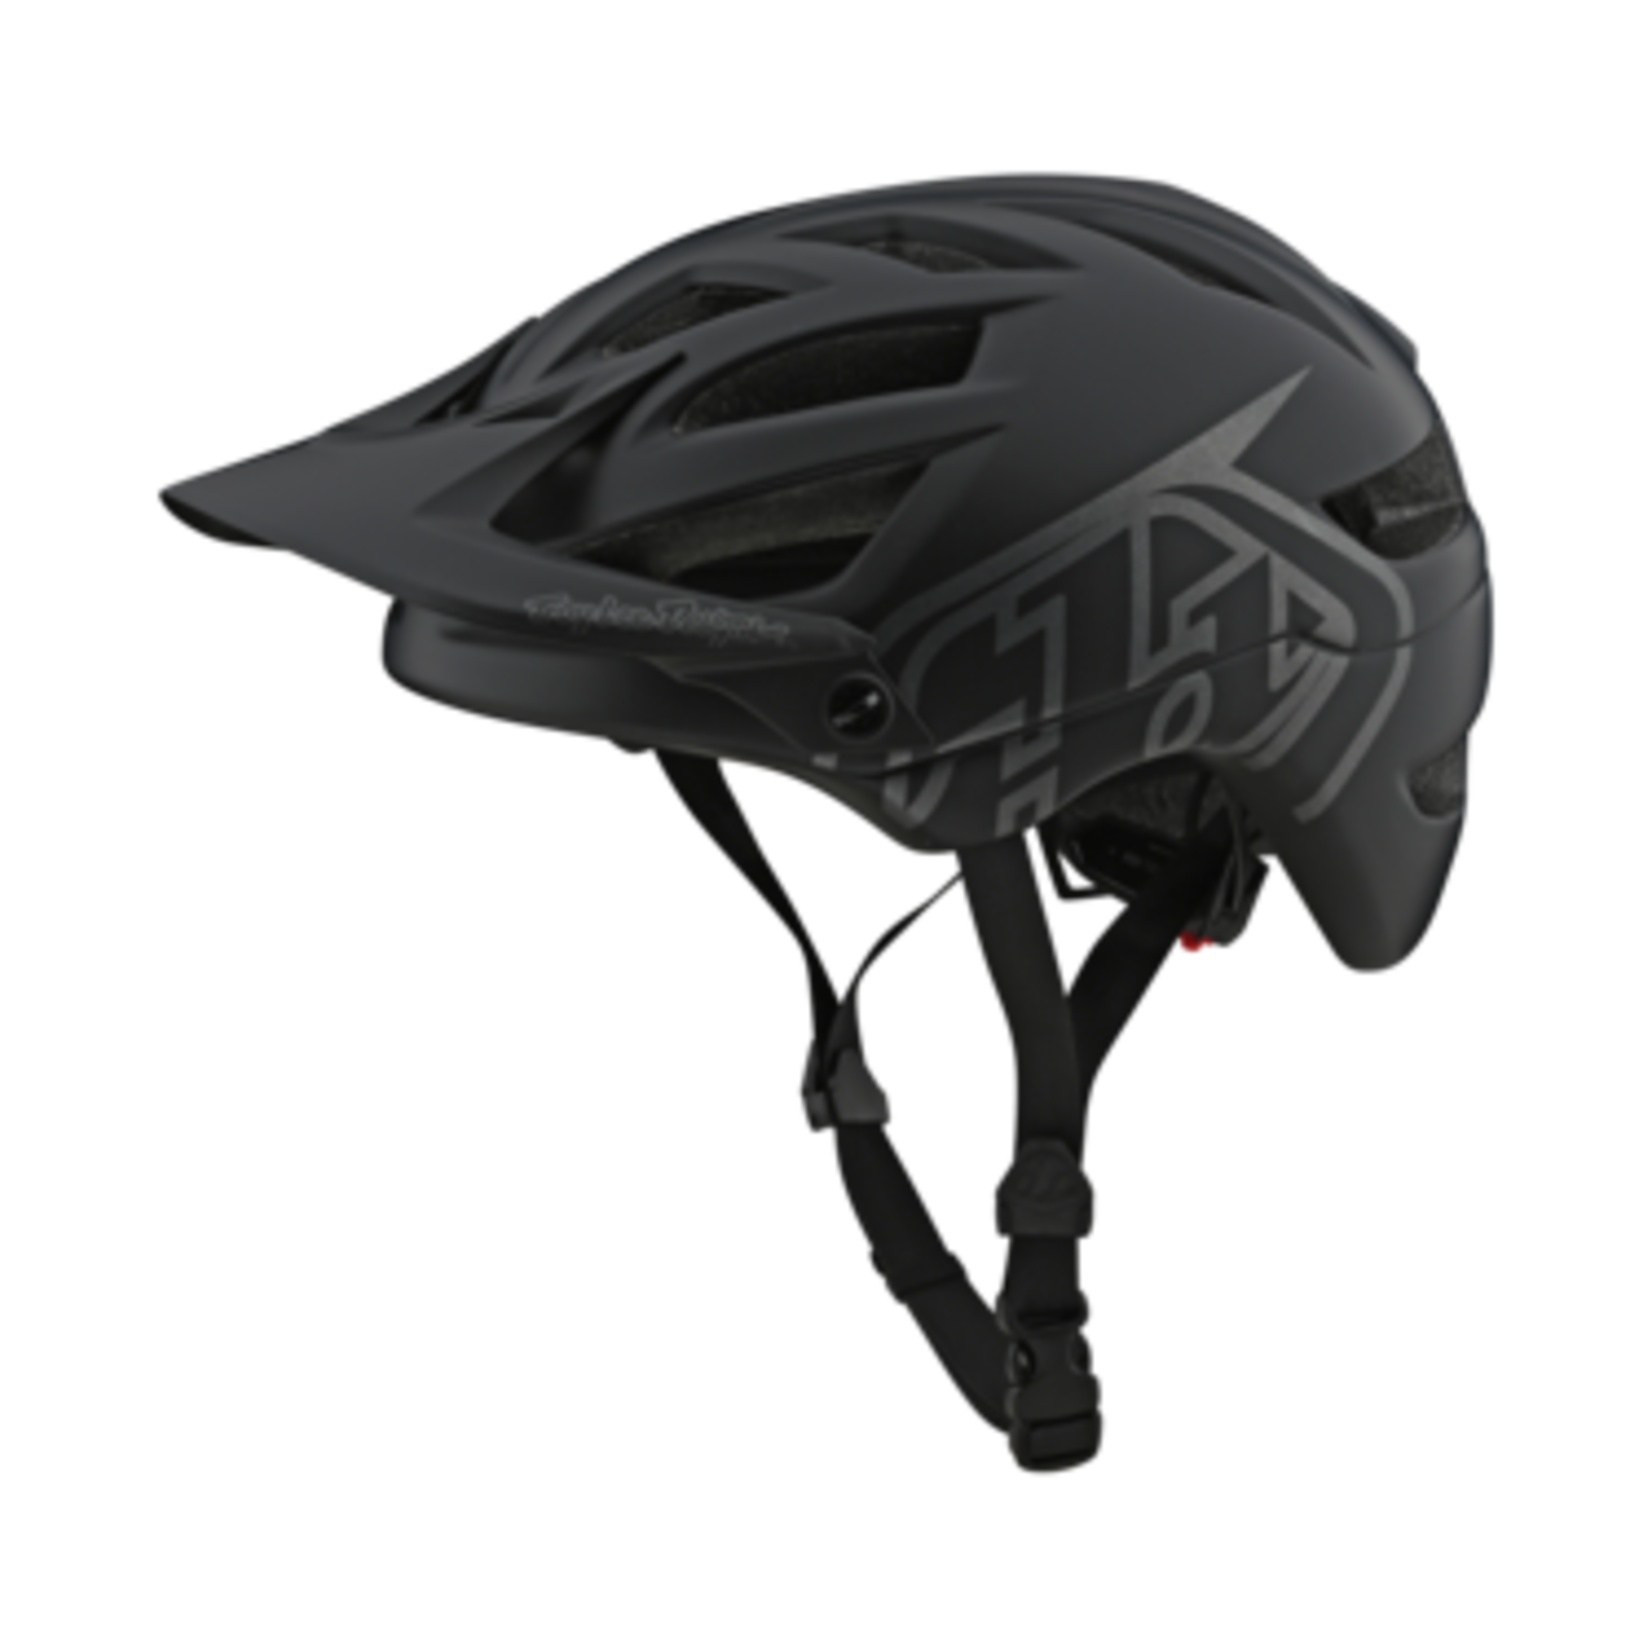 Troy Lee Designs Troy Lee Designs A1 MIPS Helmet - Classic Black, XS